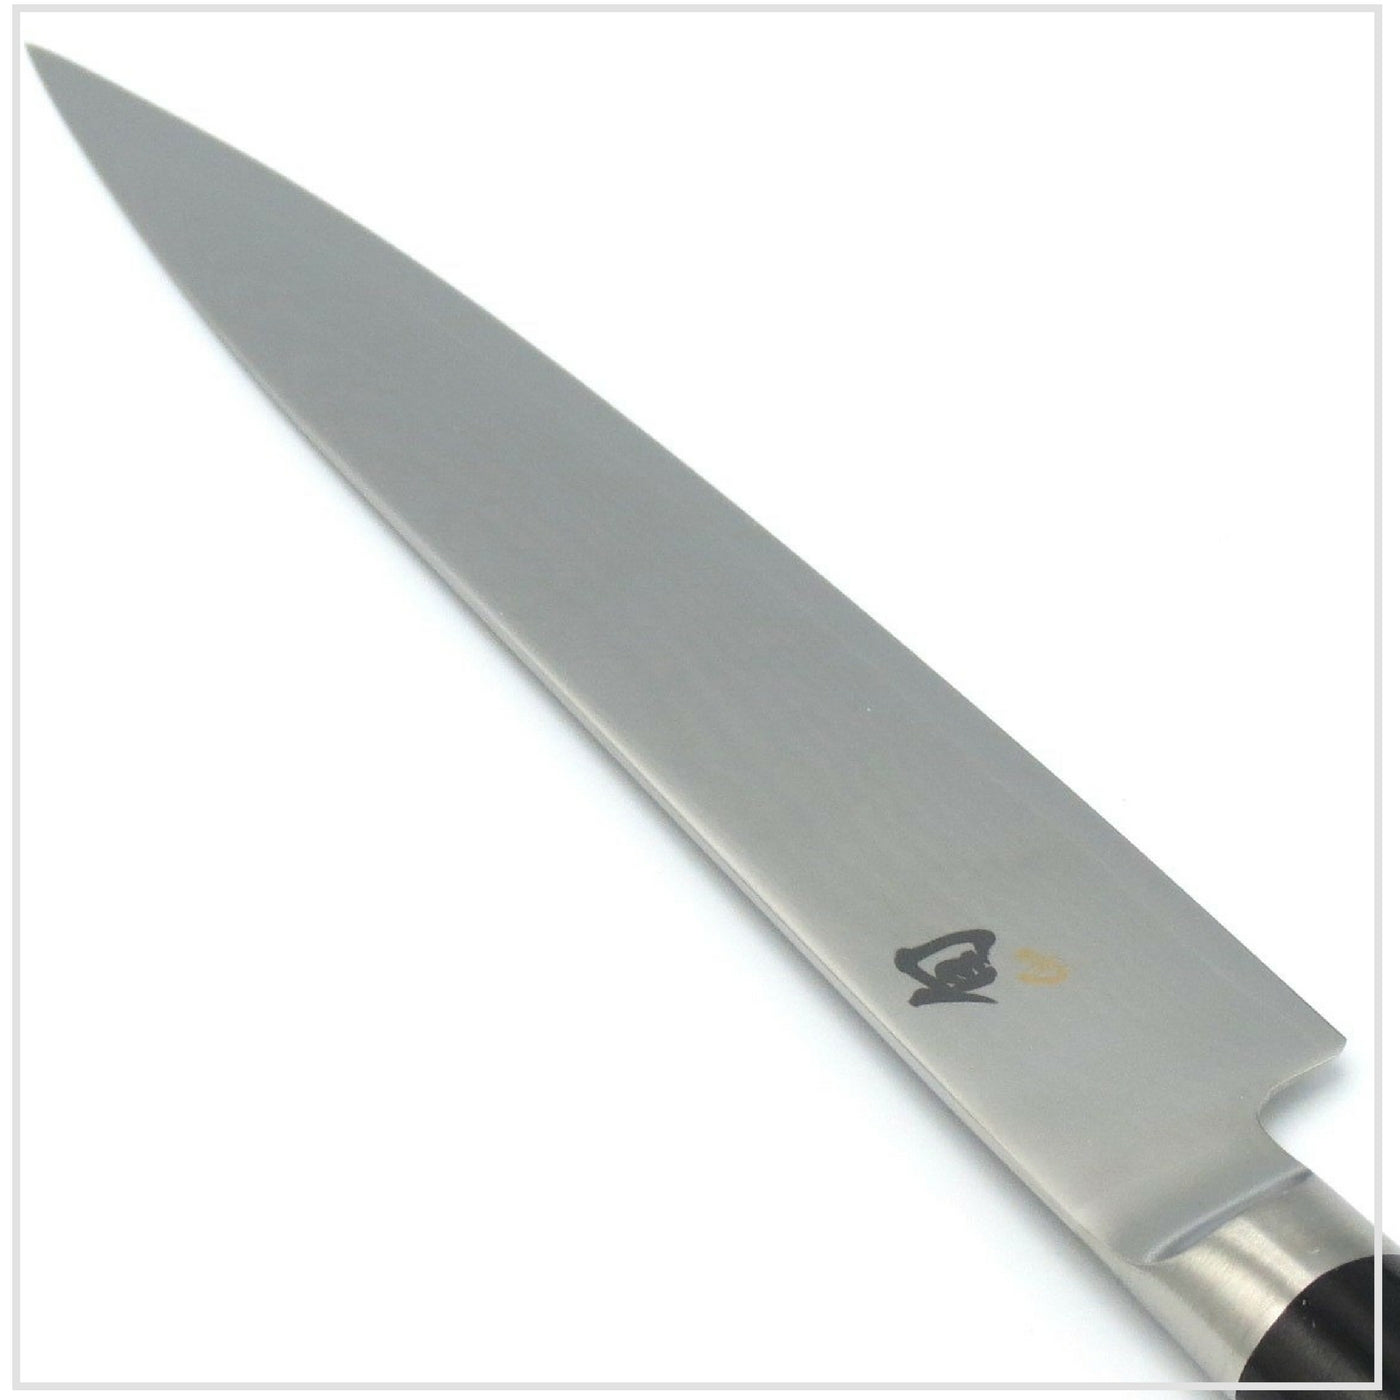 KAI SHUN Utility Knife 15cm